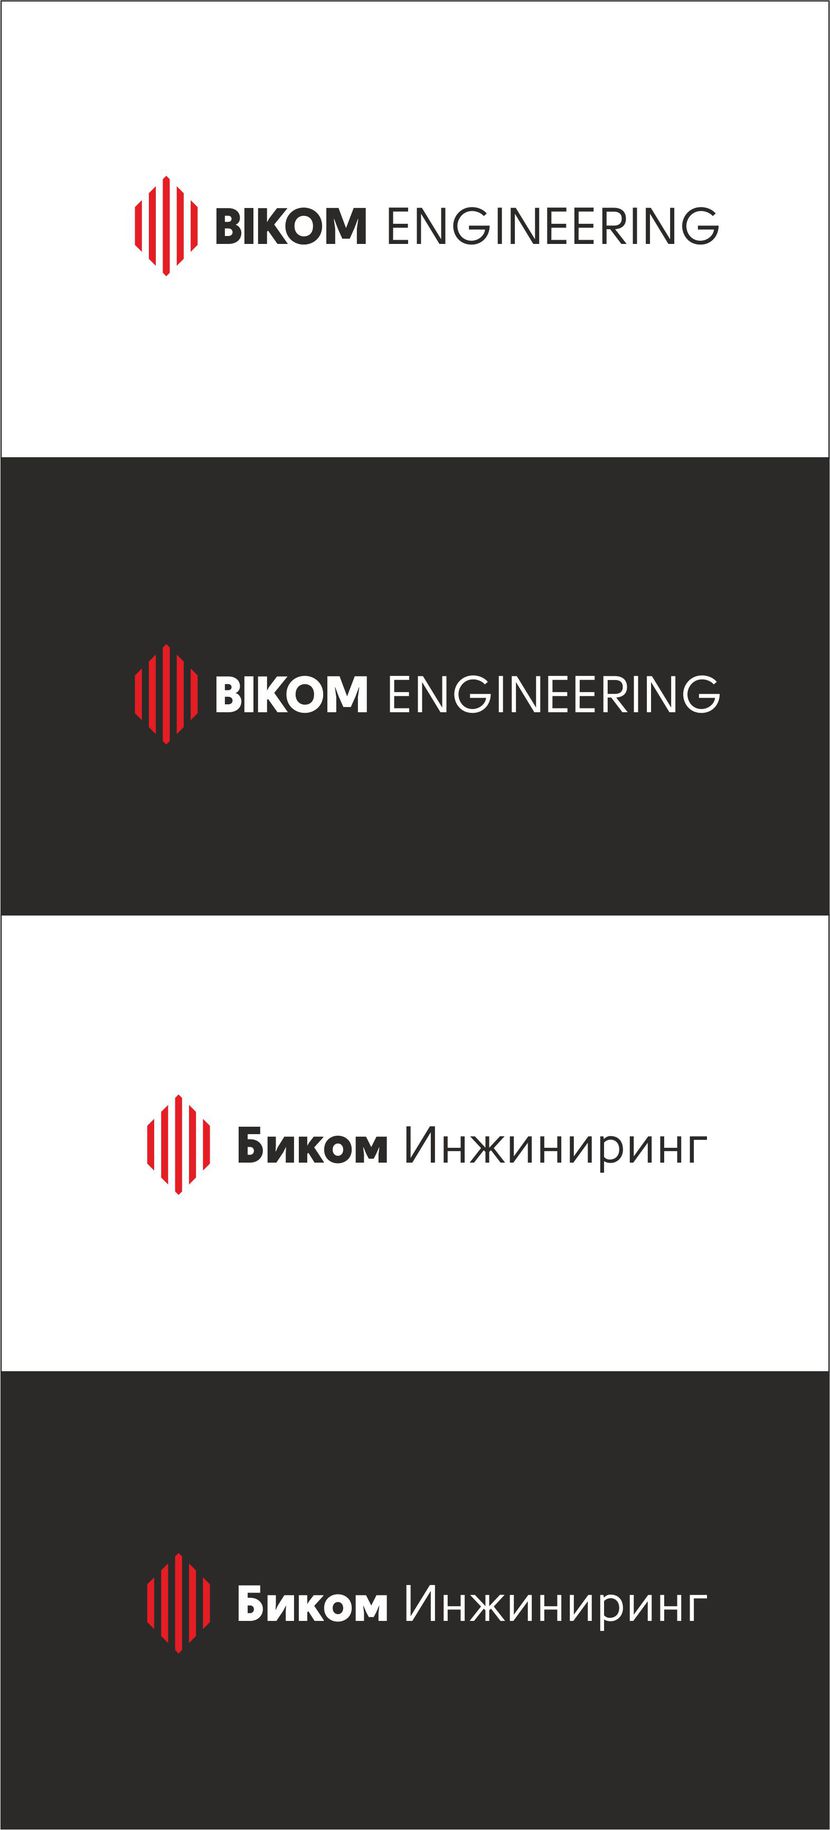 Биком_6 - Создание логотипа и фирменного стиля для строительной компании.